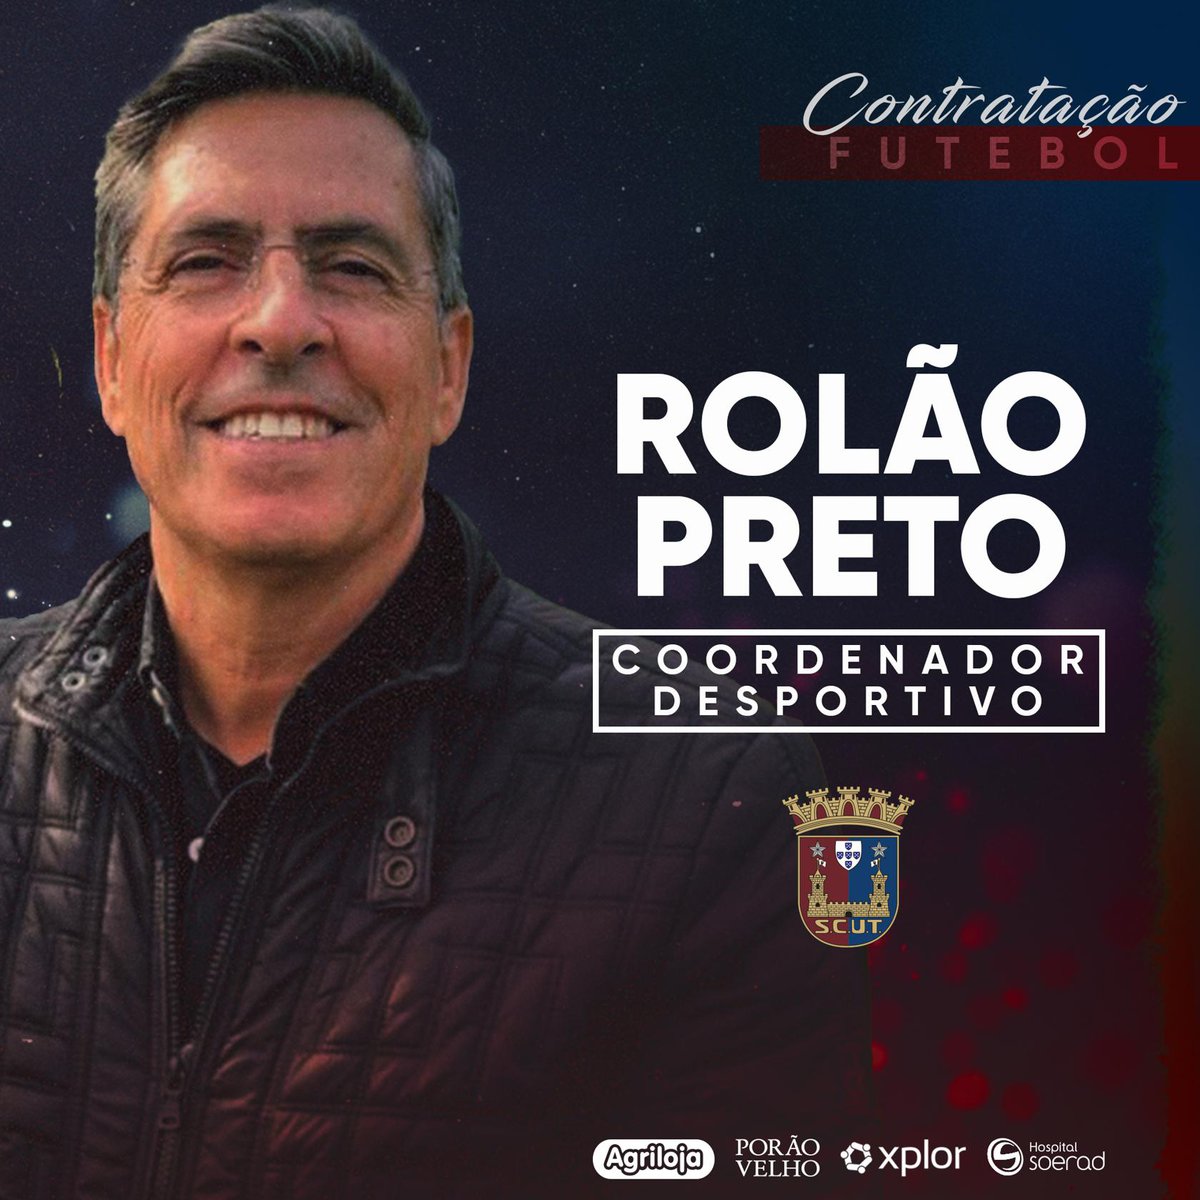 Rolão Preto é o novo Coordenador Desportivo